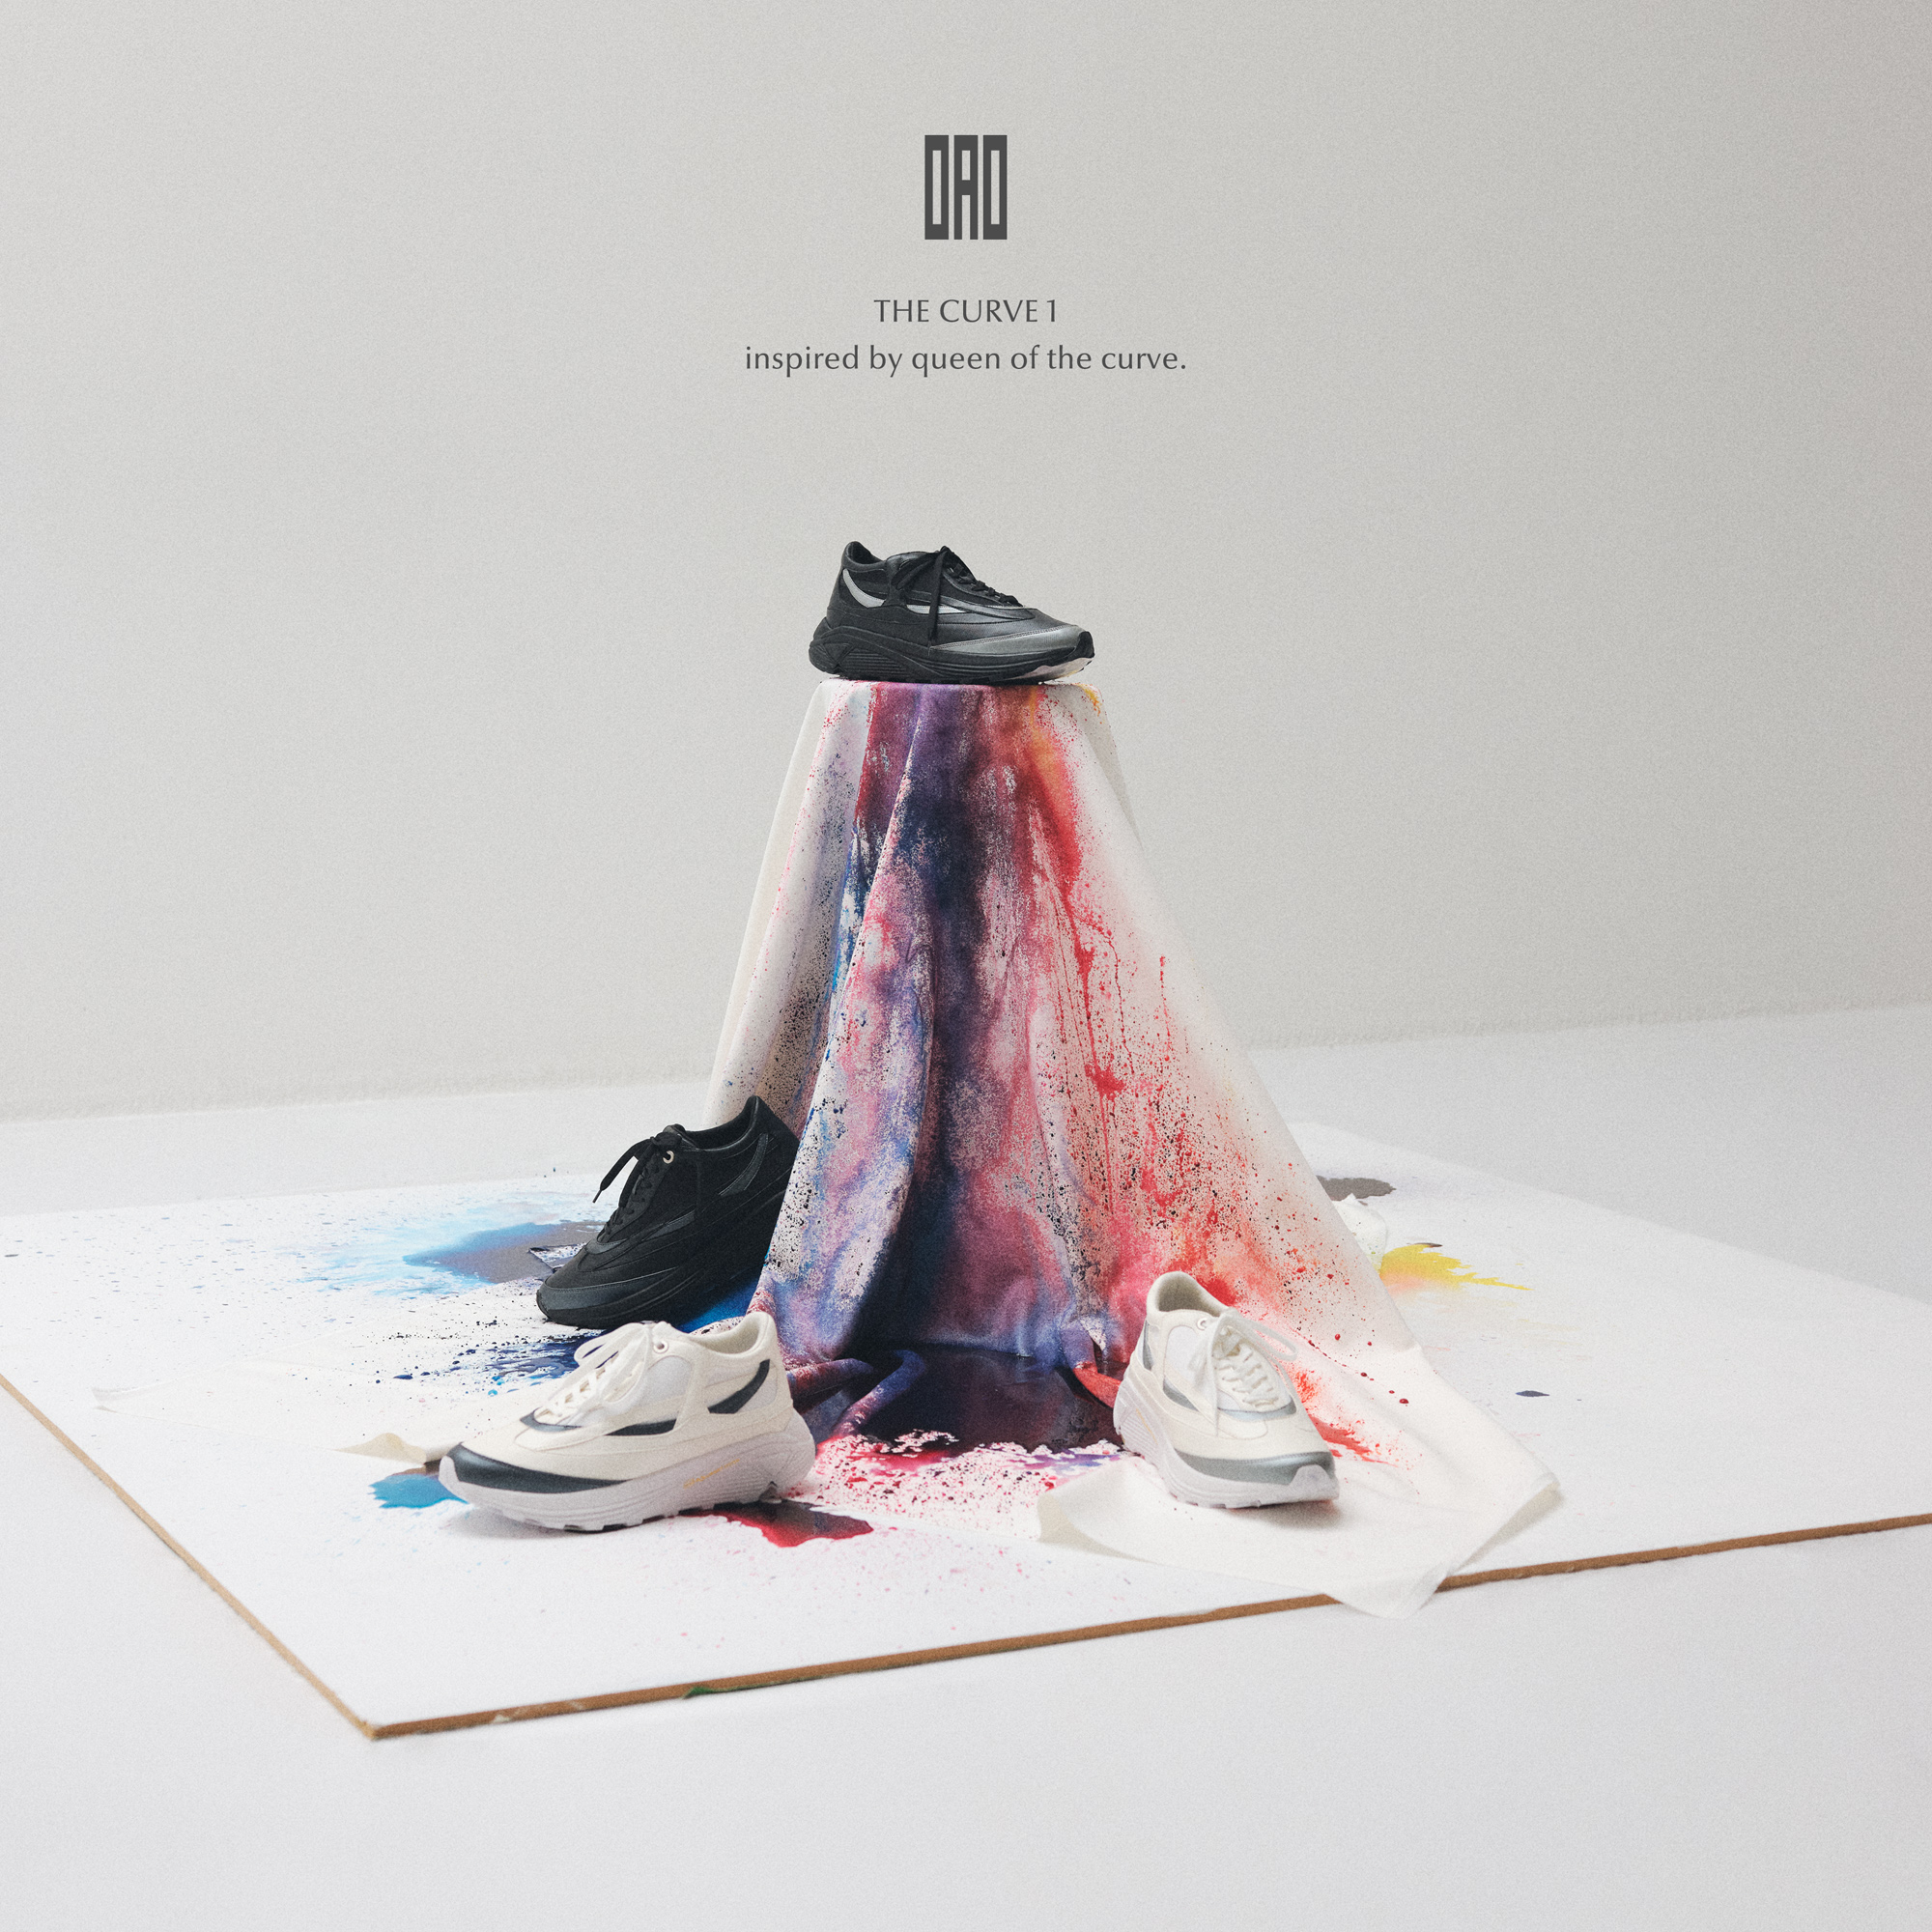 女性建築家ザハ・ハディドからインスピレーションを受けたスニーカーを発表！　アートと融合した新生フットウェアブランド「OAO」